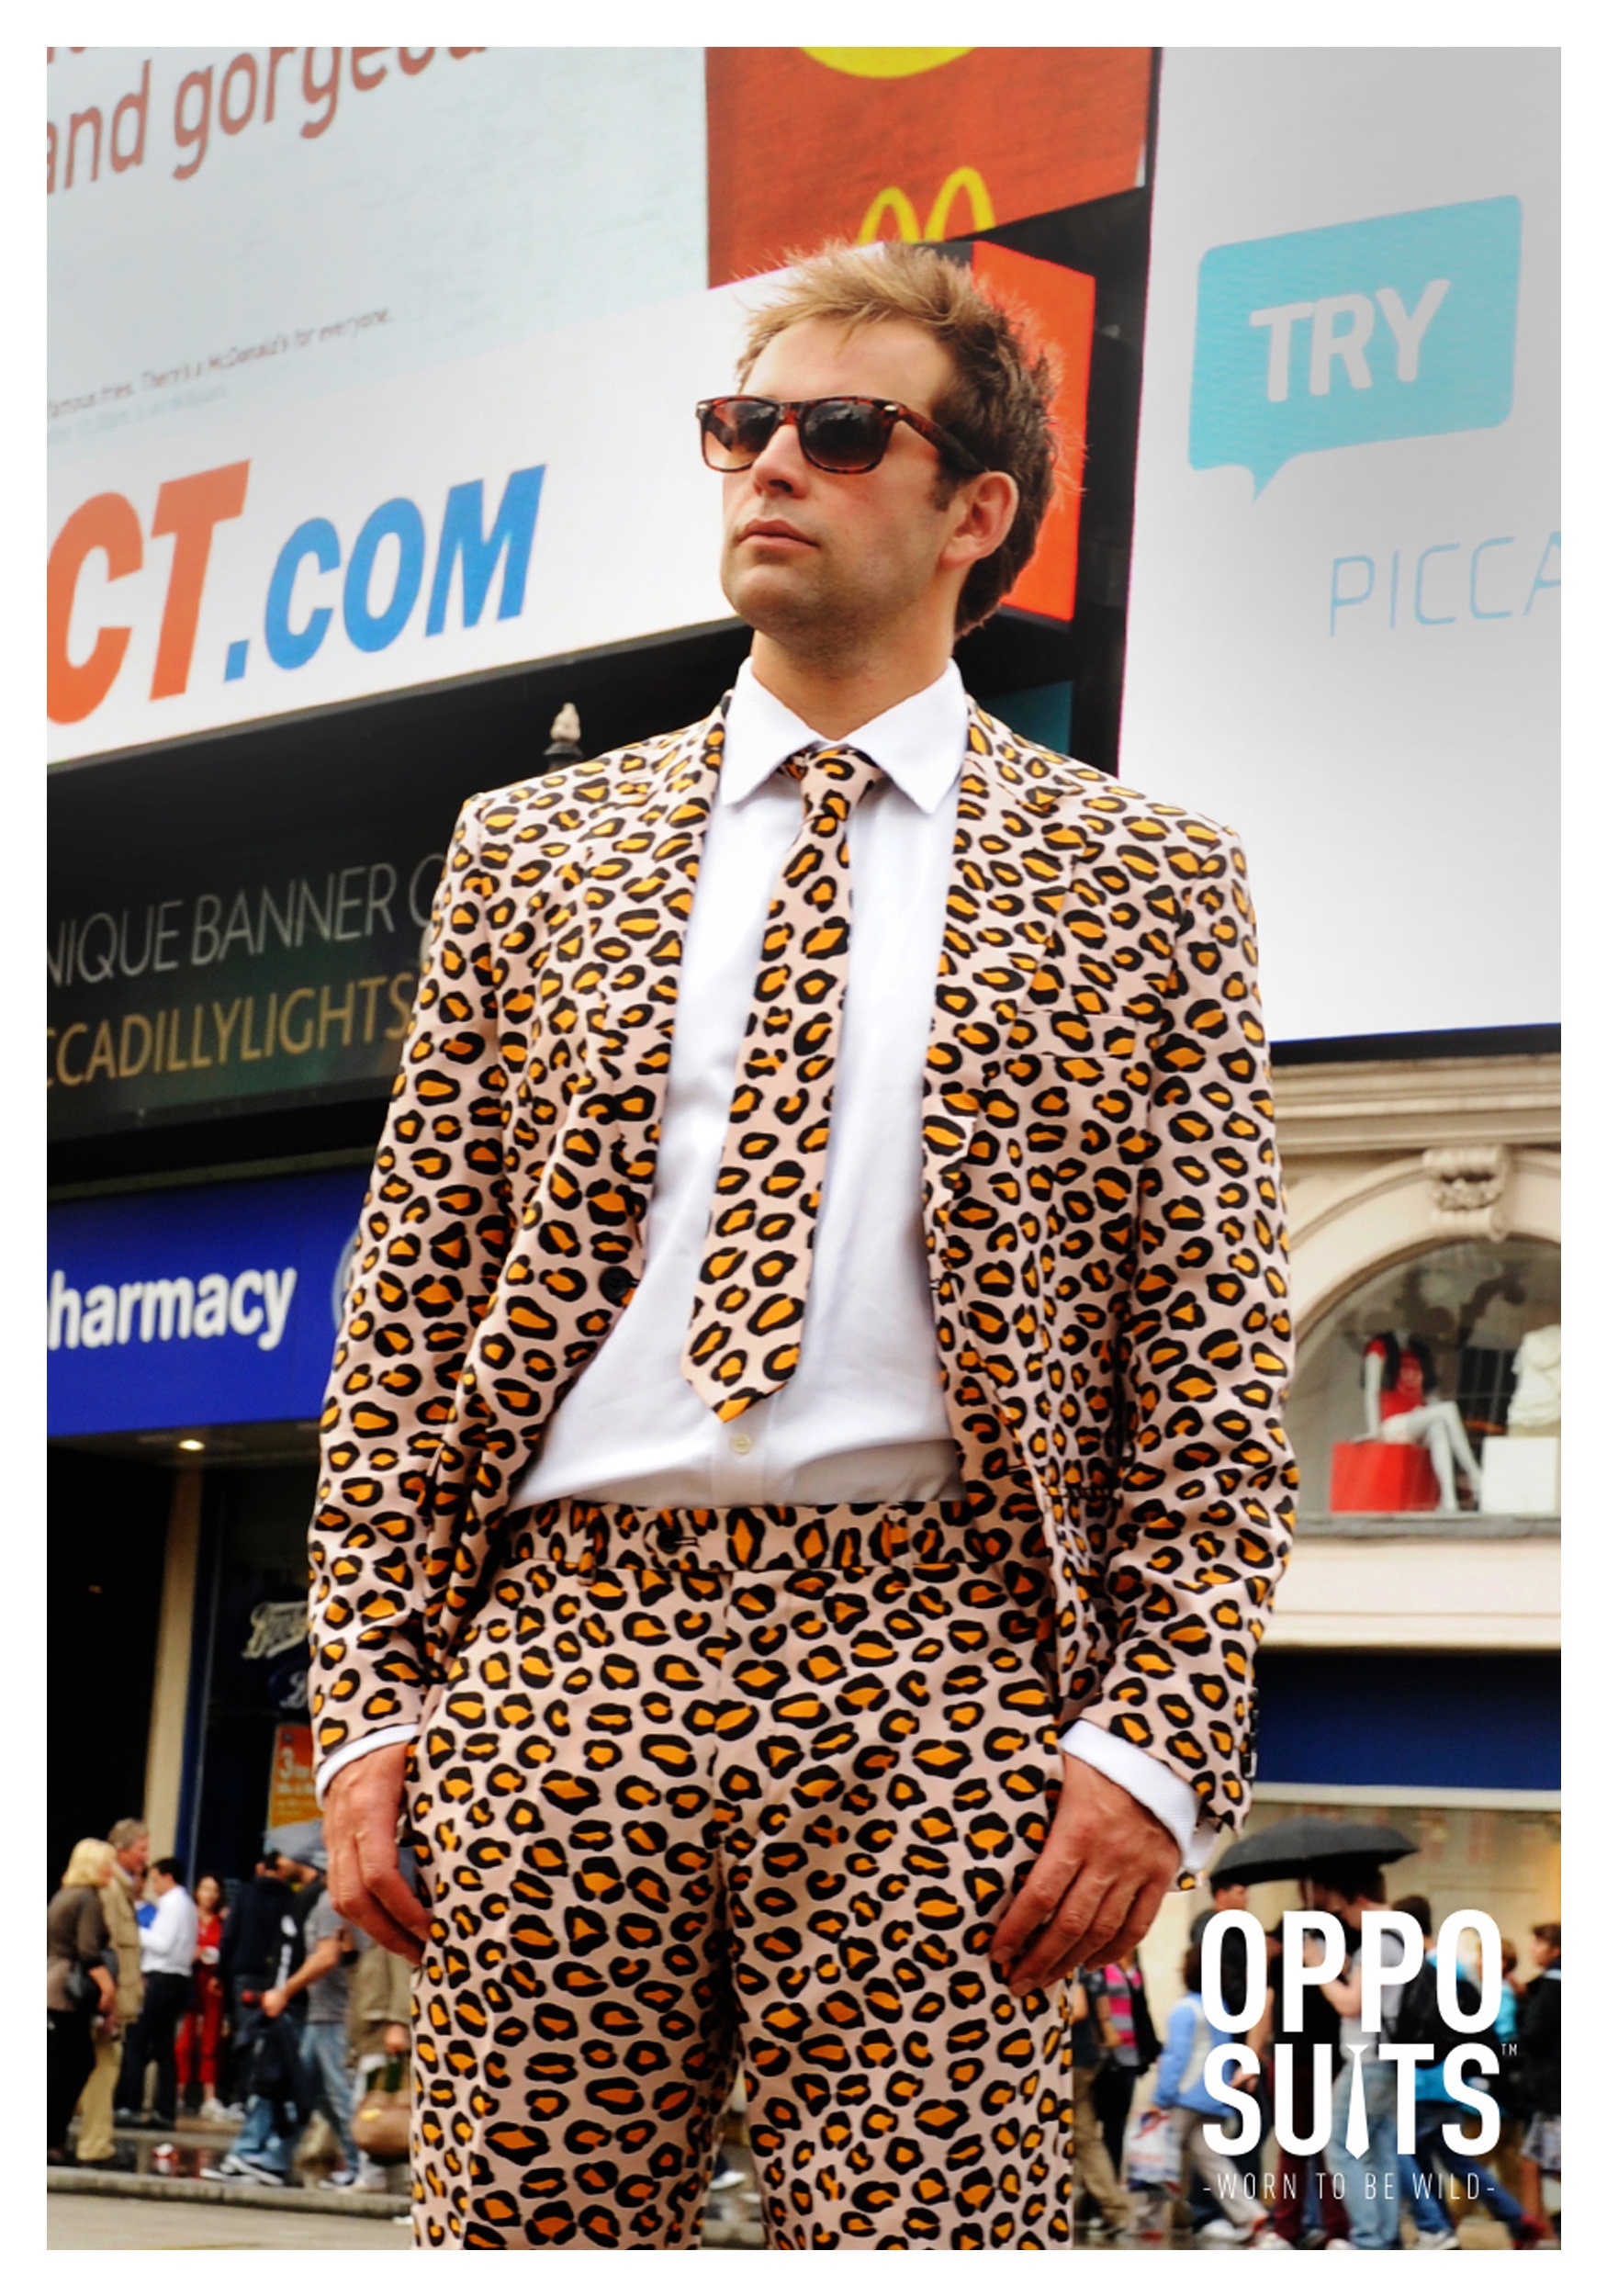 cheetah print suit